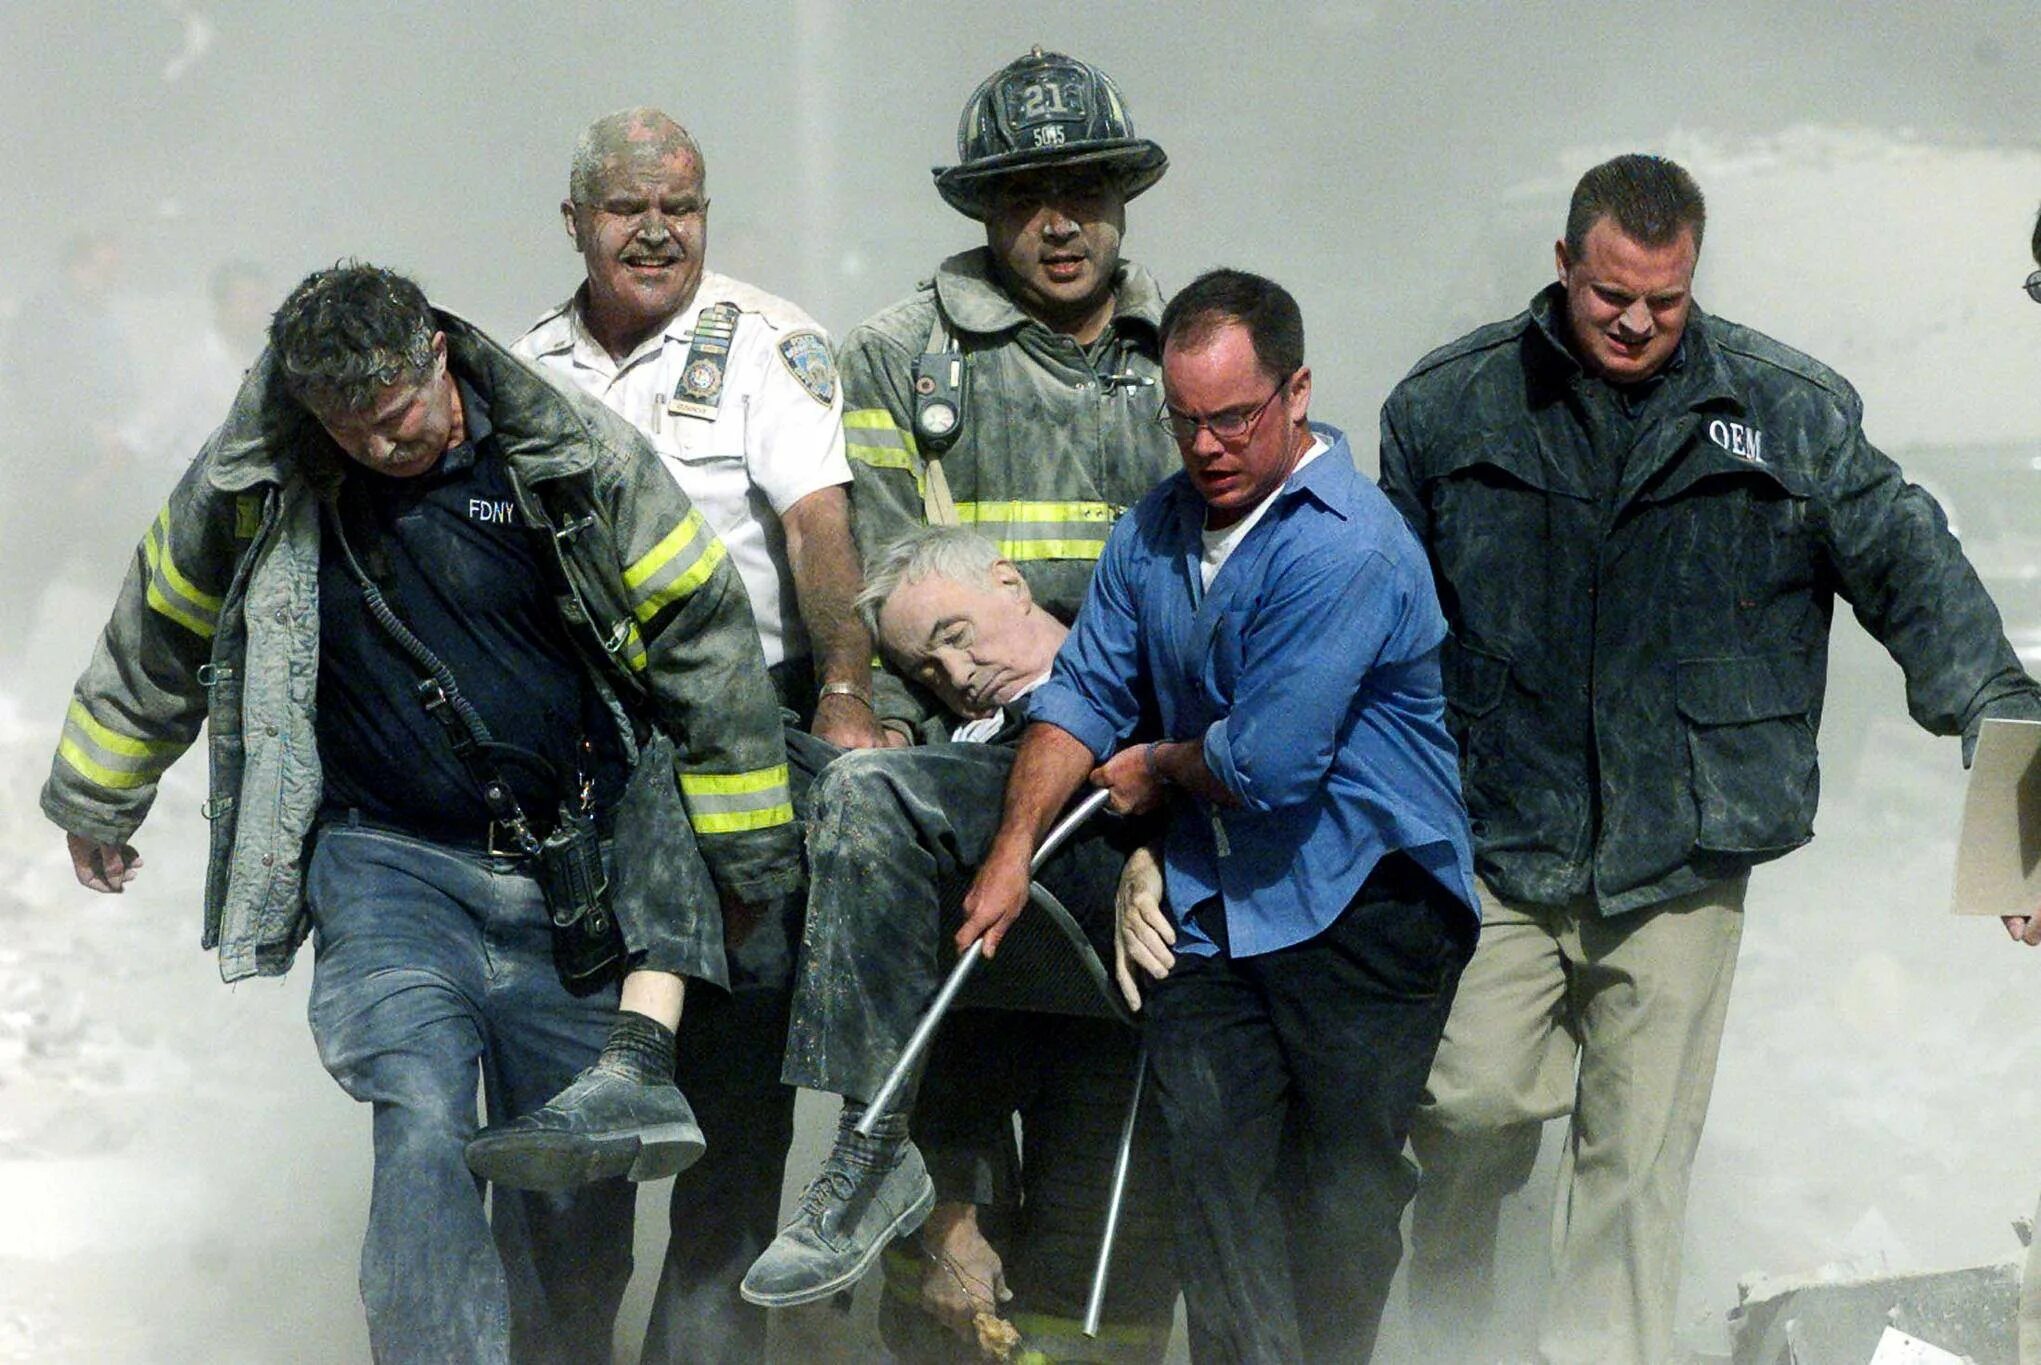 Спасатели 11 сентября 2001. Теракт в Нью-Йорке 11 сентября 2001. Башни Близнецы 11 сентября жертвы. Число погибших 11 сентября 2001.